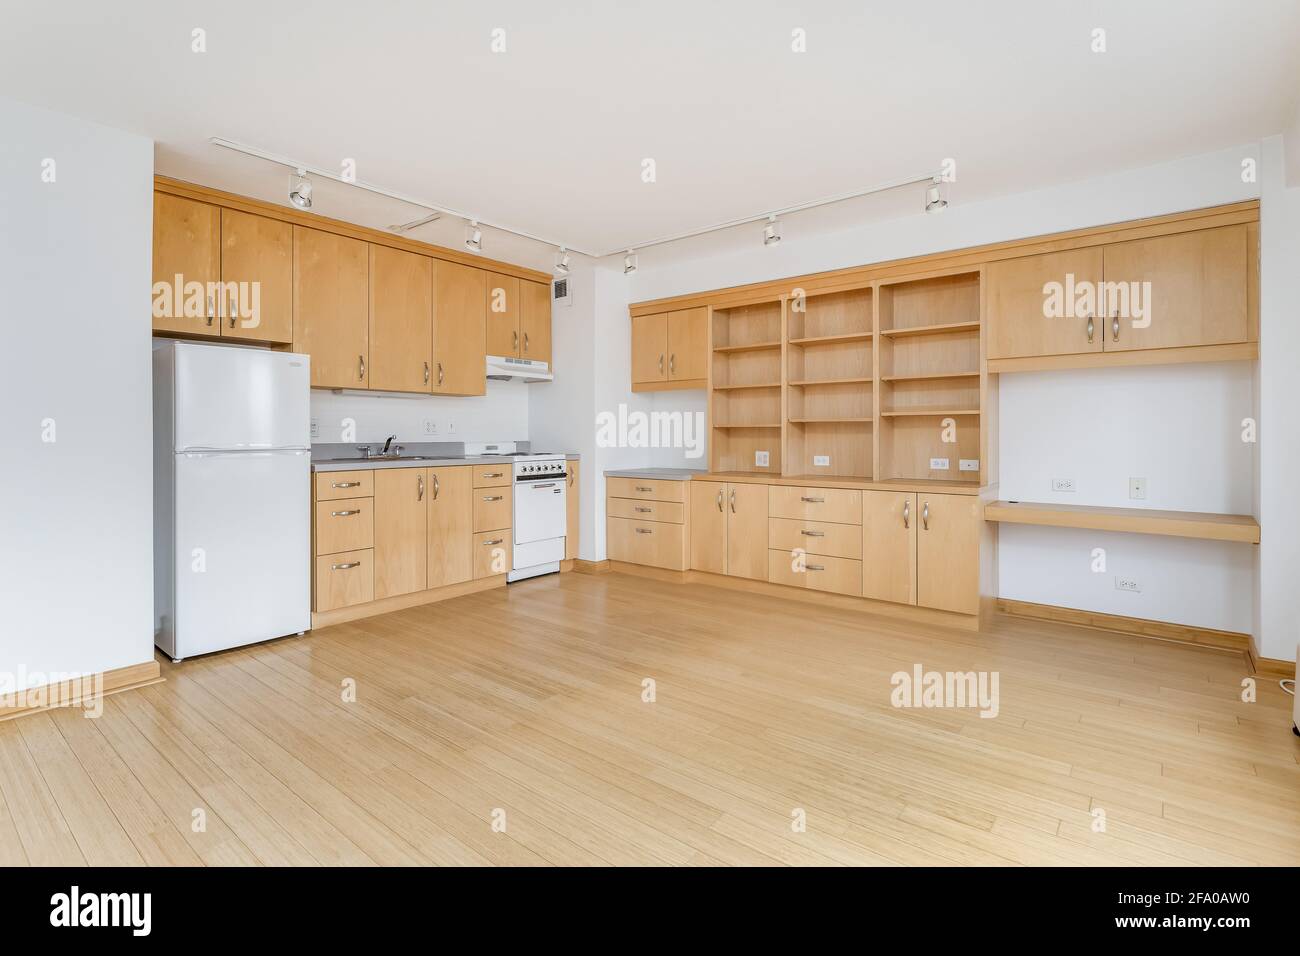 Une cuisine en érable dans un appartement vide de la ville avec des appareils électroménagers blancs, des comptoirs en granit, beaucoup d'armoires pour le stockage, et des planchers de bois franc. Banque D'Images